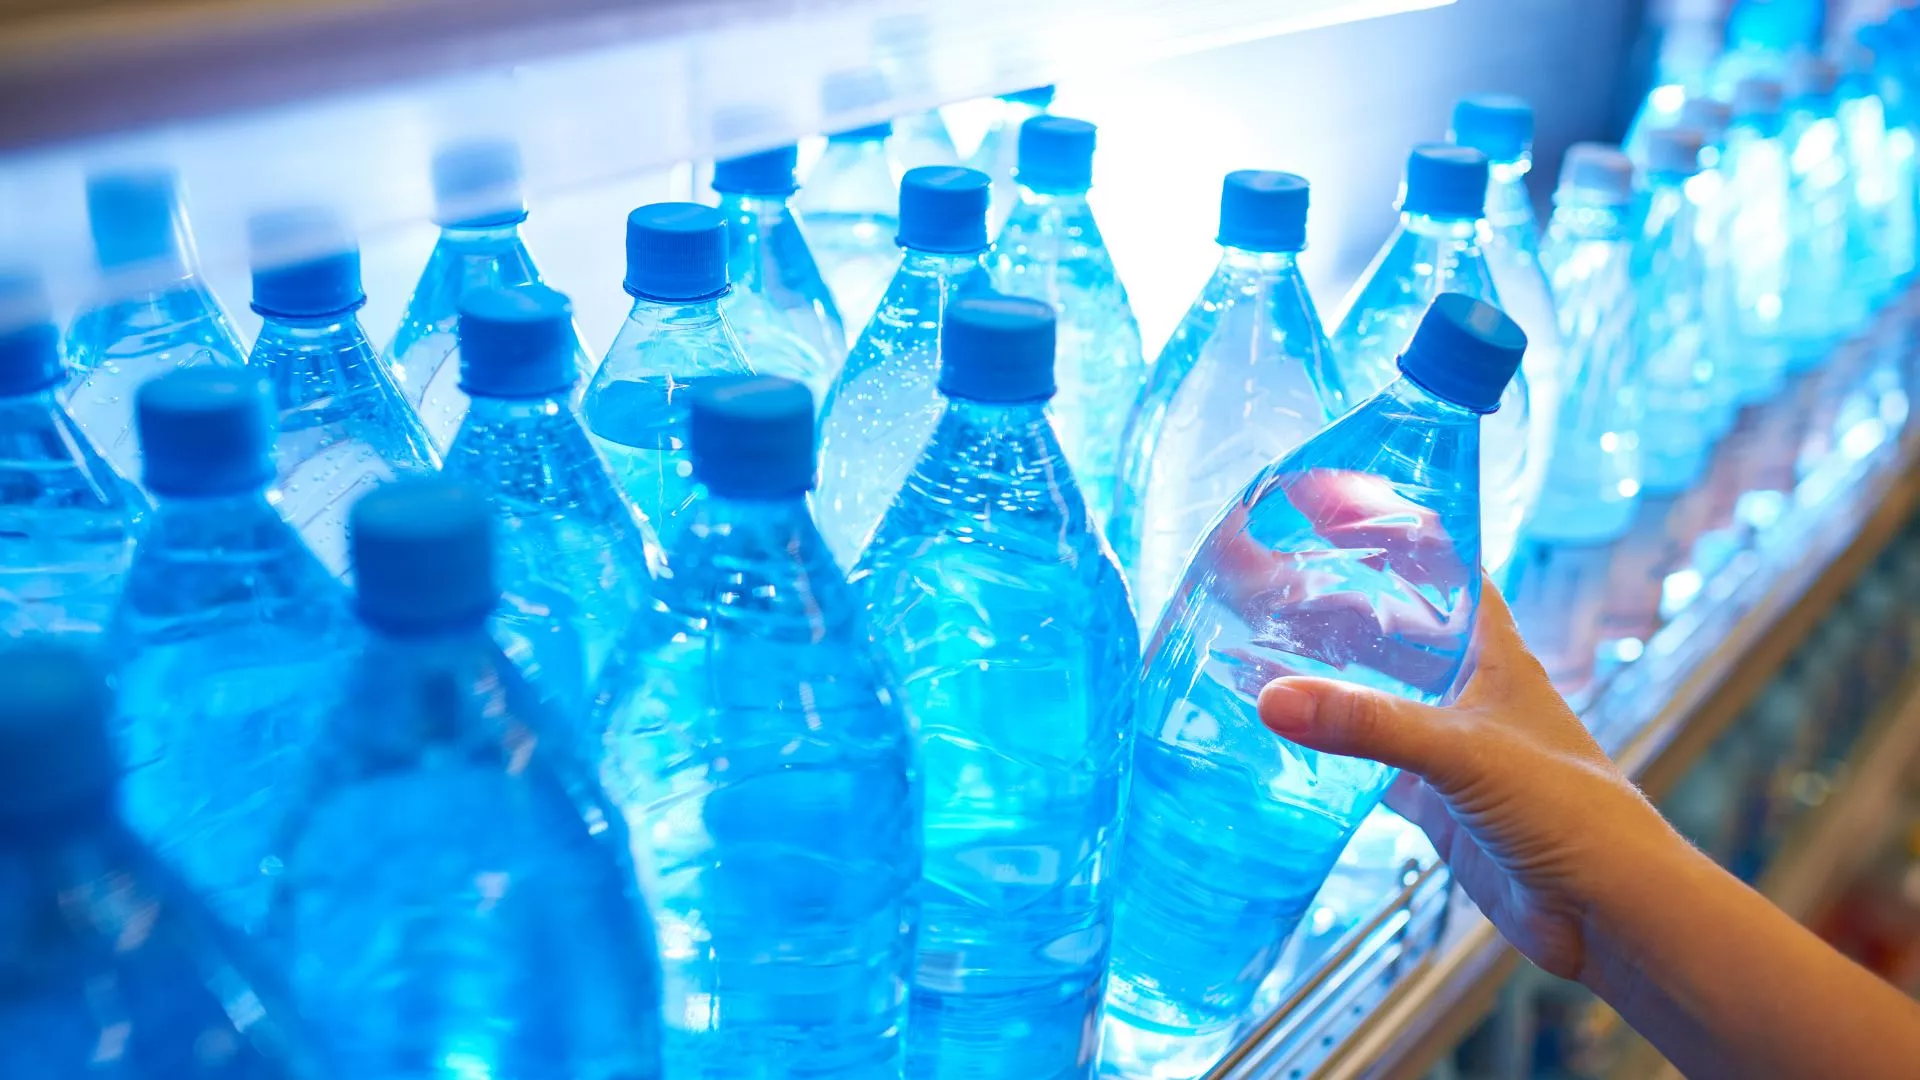 Uji në shishe përmban 100 herë më shumë grimca plastike sesa mendohej